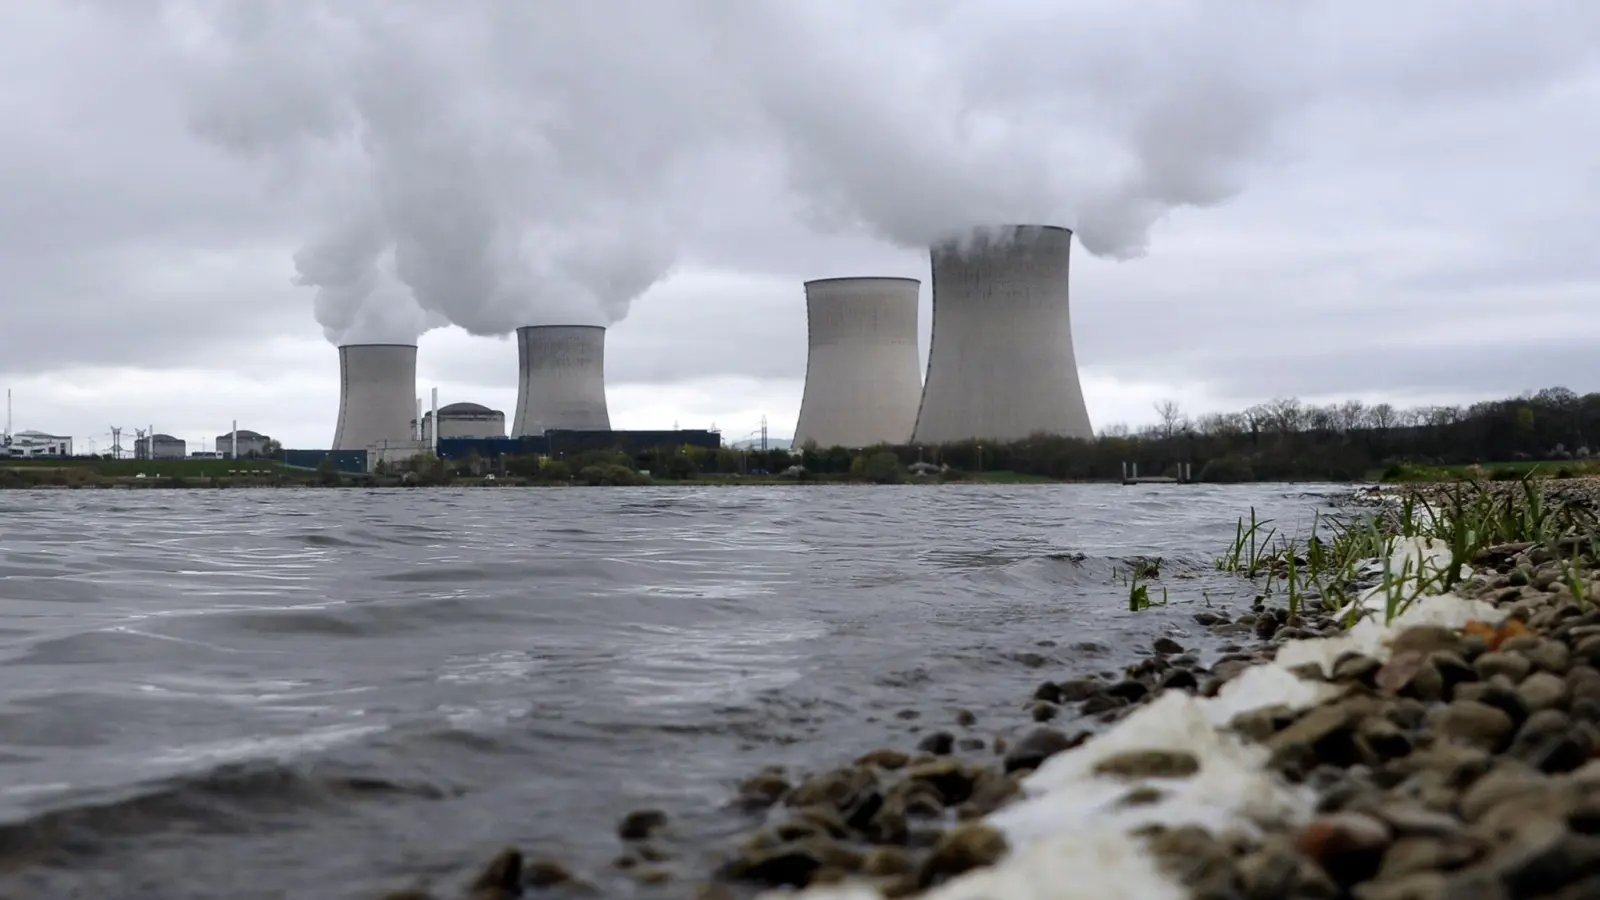 Knapp die Hälfte der 56 französischen Atomreaktoren ist derzeit für Wartungen oder Reparaturen vom Netz (Symbolbild). (Foto: Christophe Karaba/EPA/dpa)